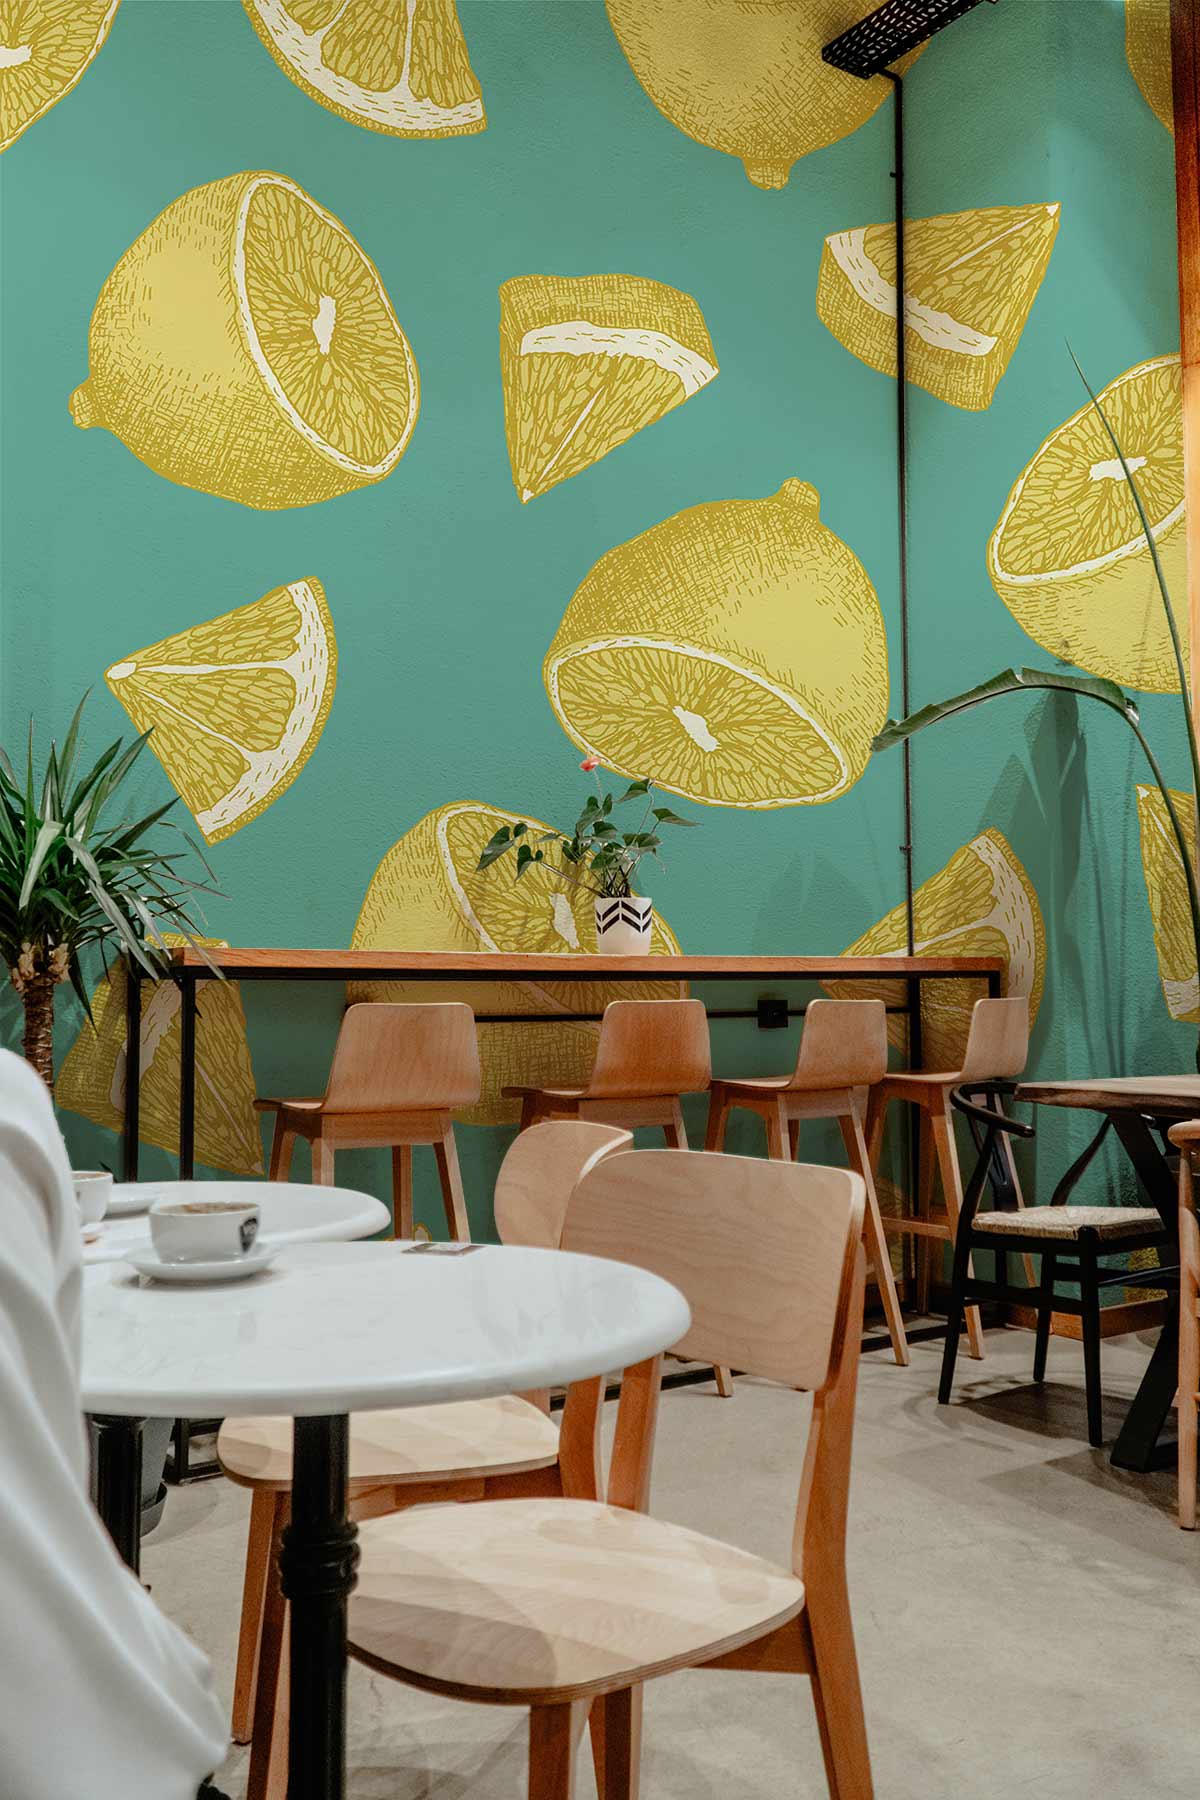 Sliced Lemons Fruit Wallpaper Mural for restaurant decor